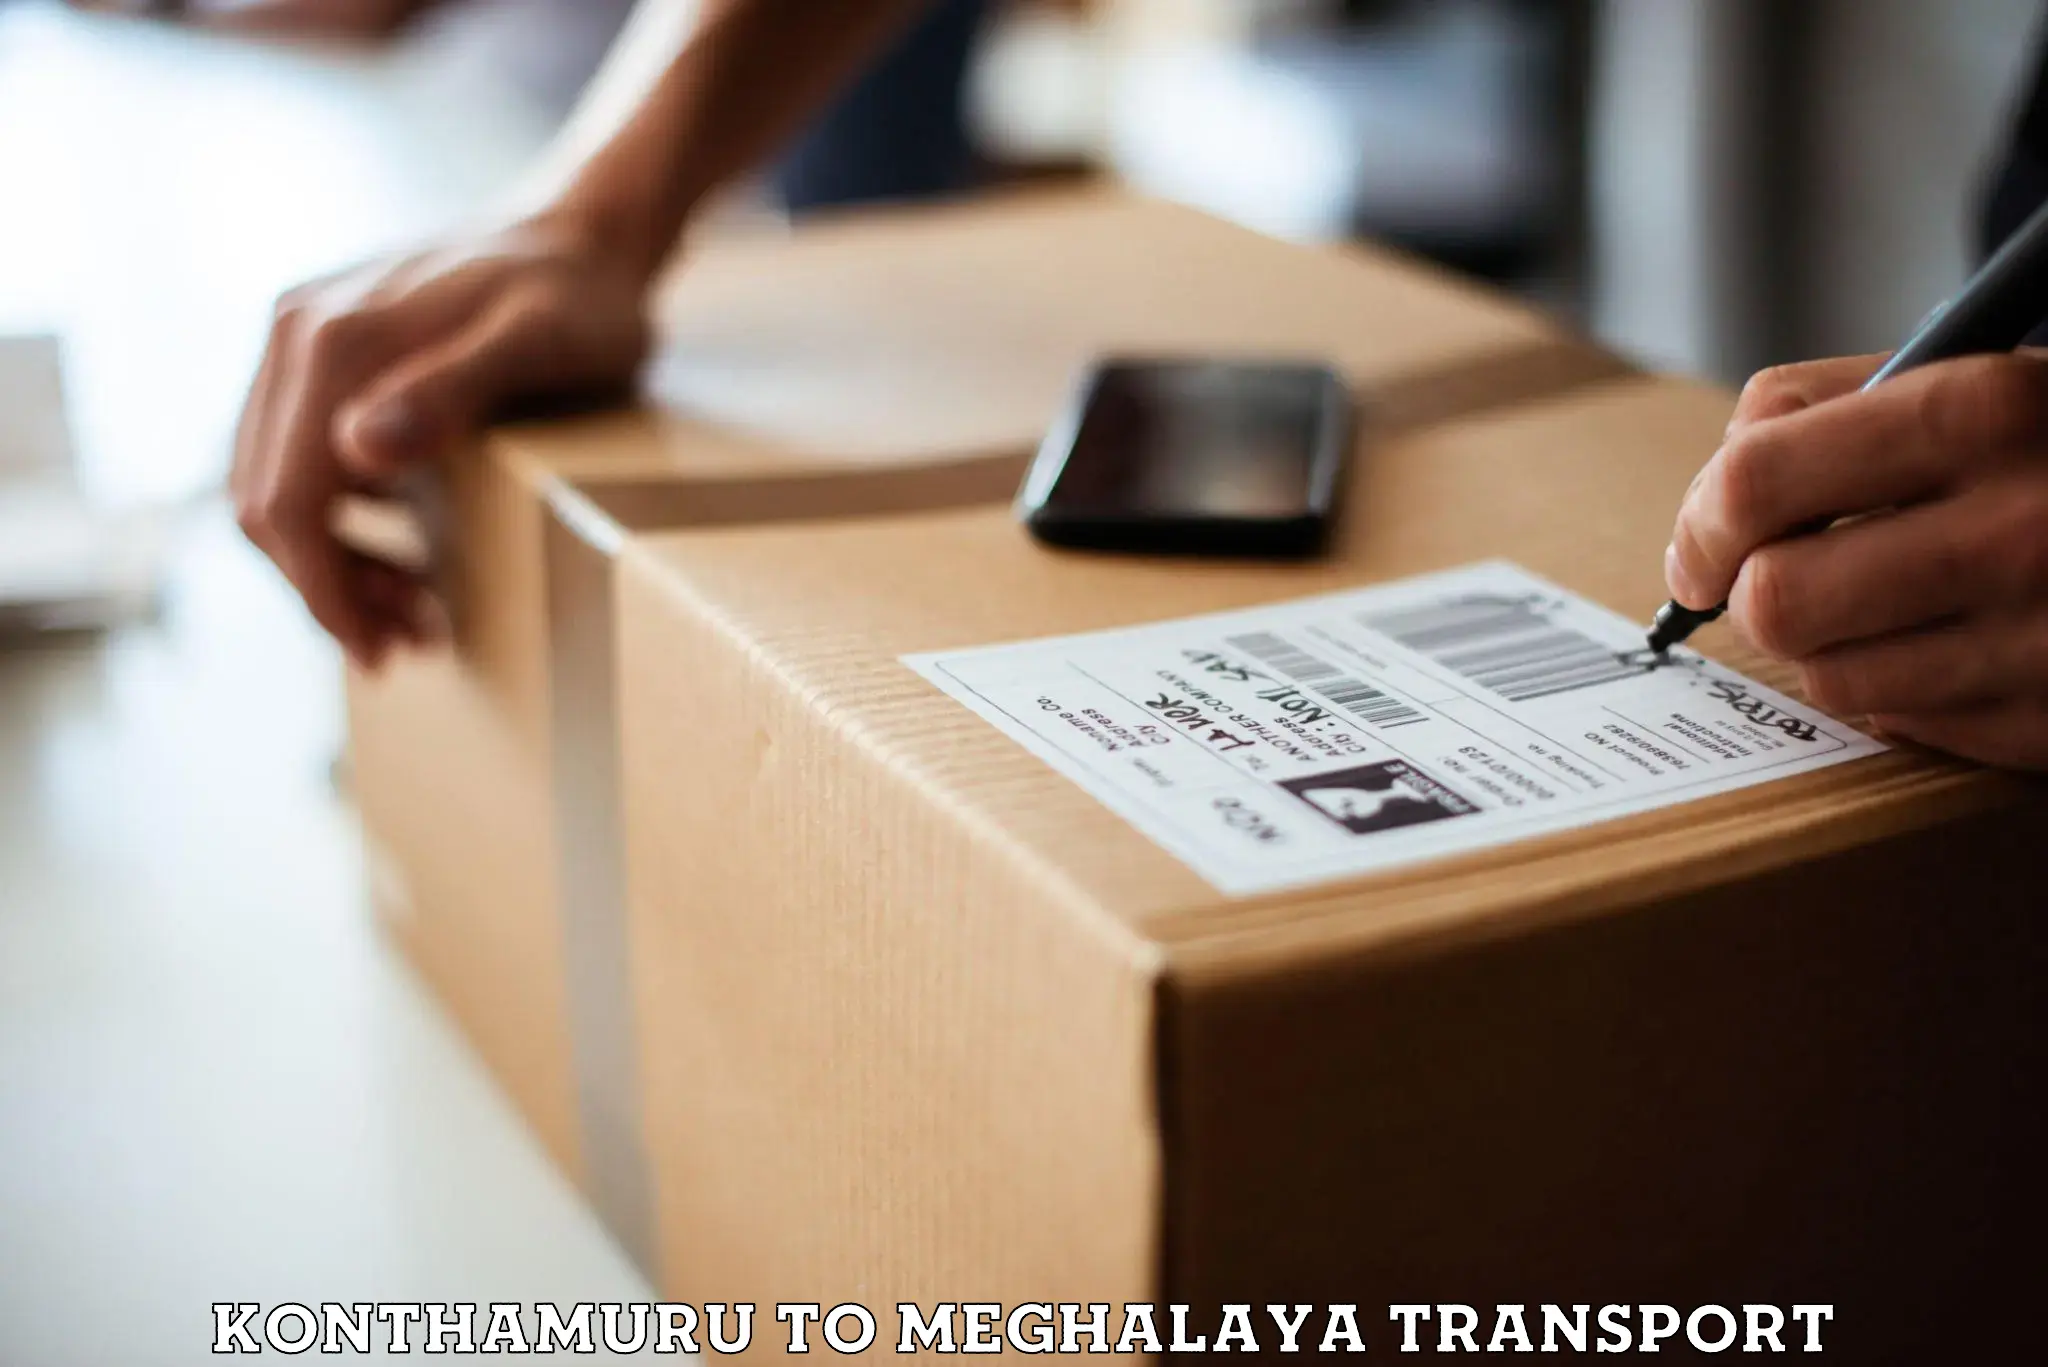 Container transport service Konthamuru to Meghalaya